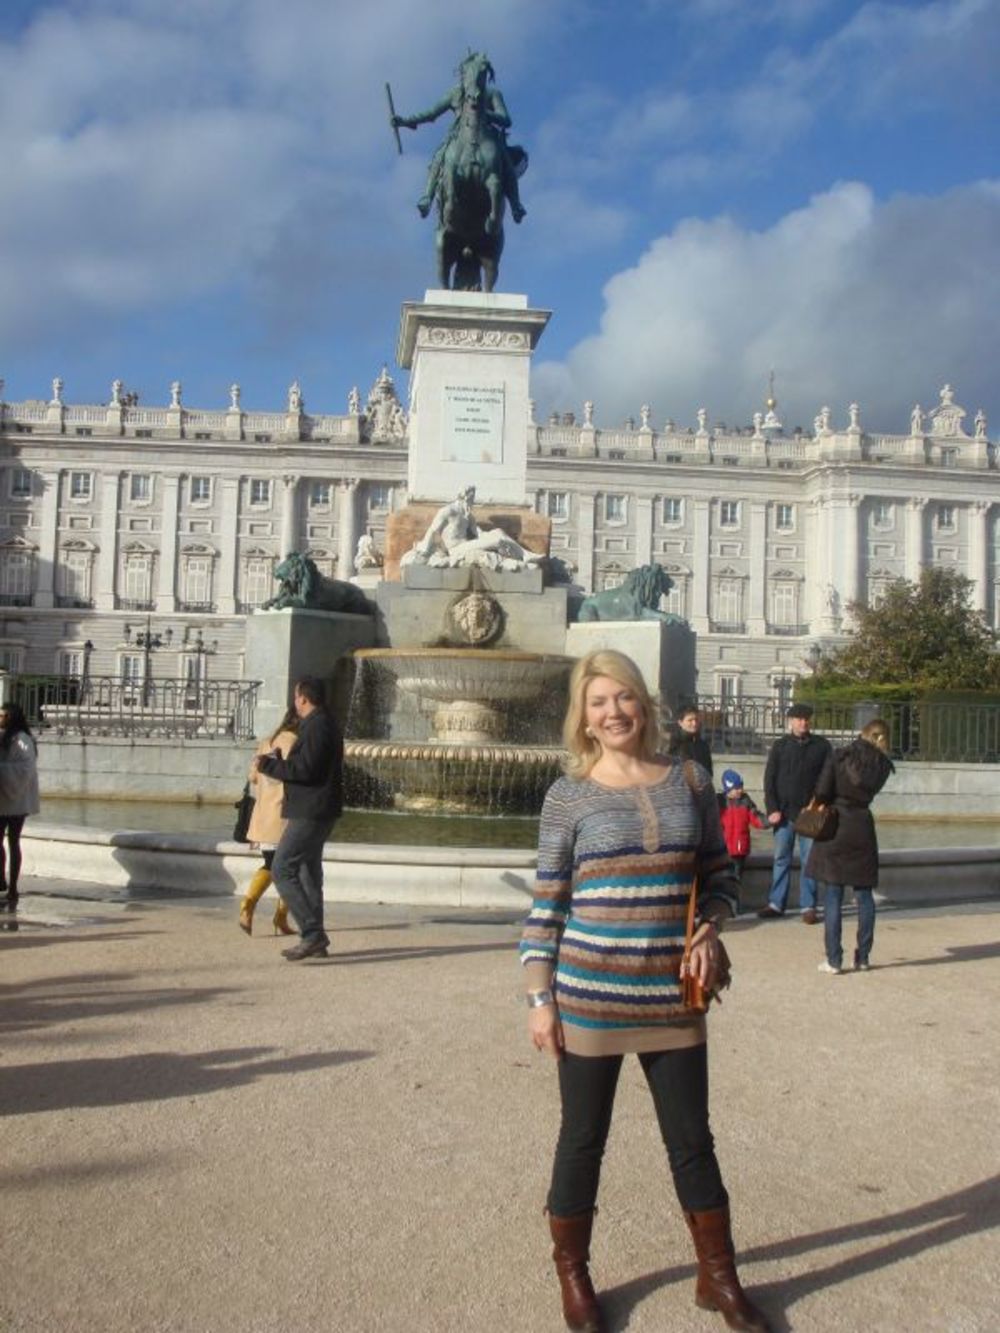 Popularna voditeljka nacionalne televizije Košava uživala je odmarajući se u Madridu sa svojim verenikom Simeonom.